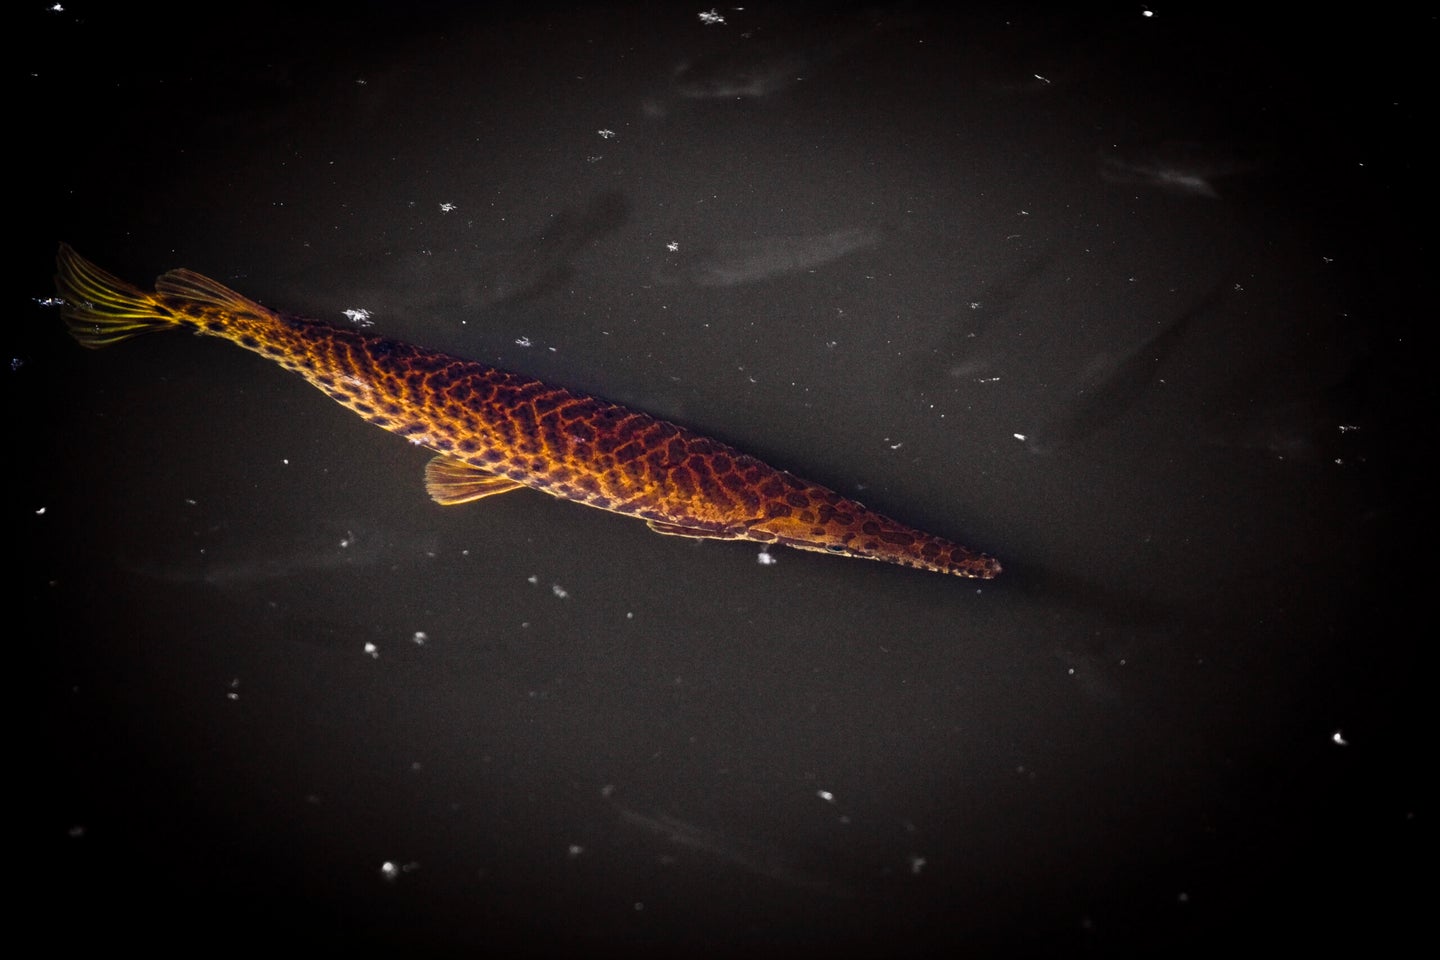 Alligator Gar swimming in water at night